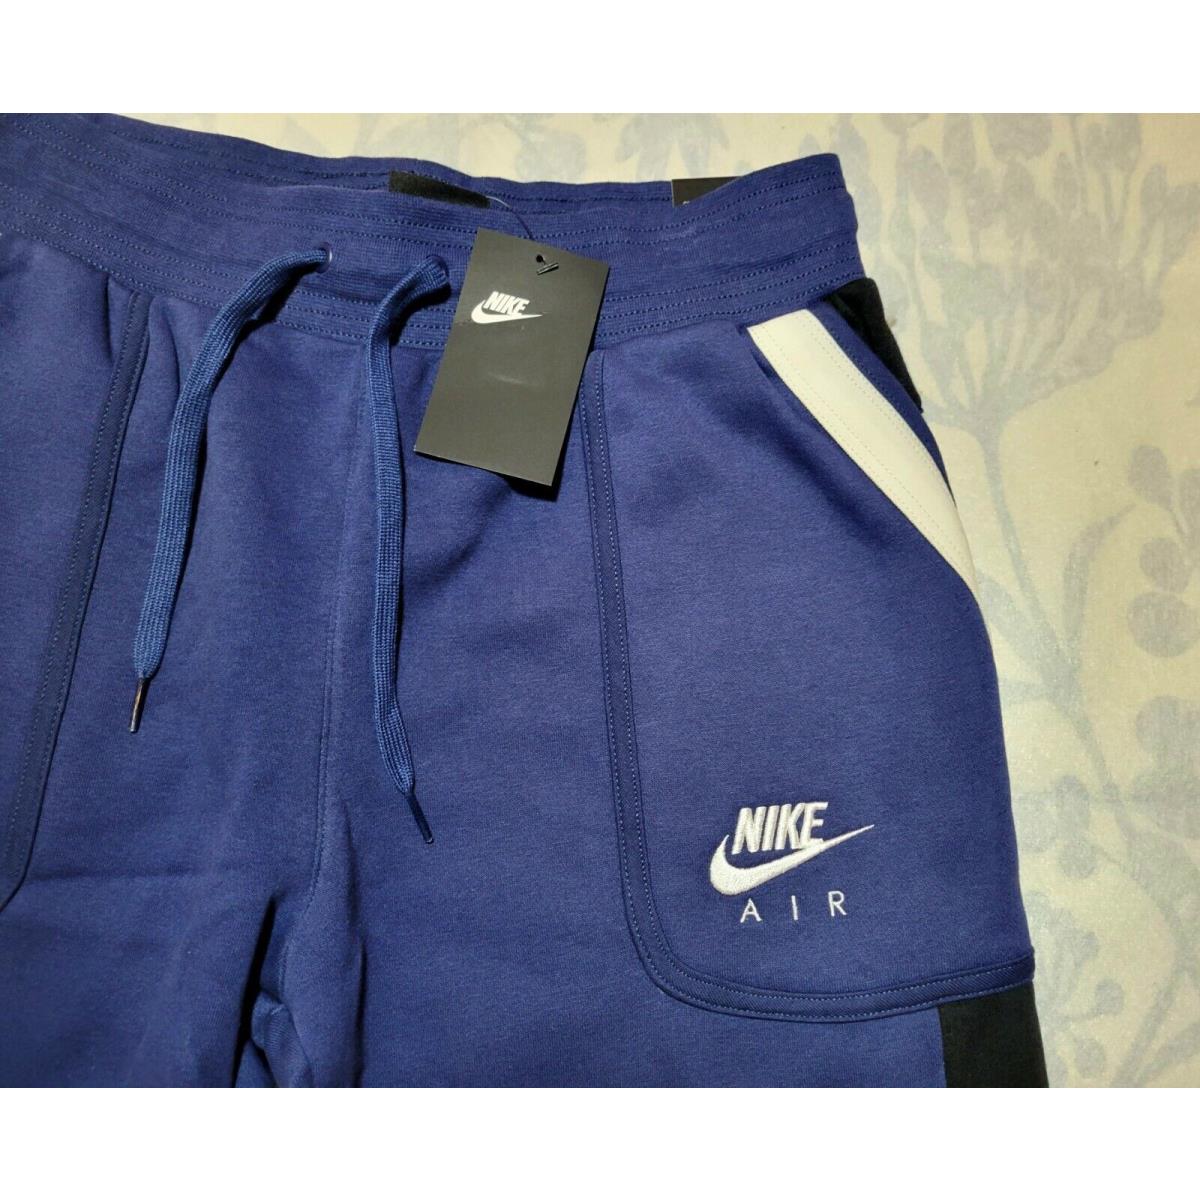 Nike clothing  - Blue Black 1